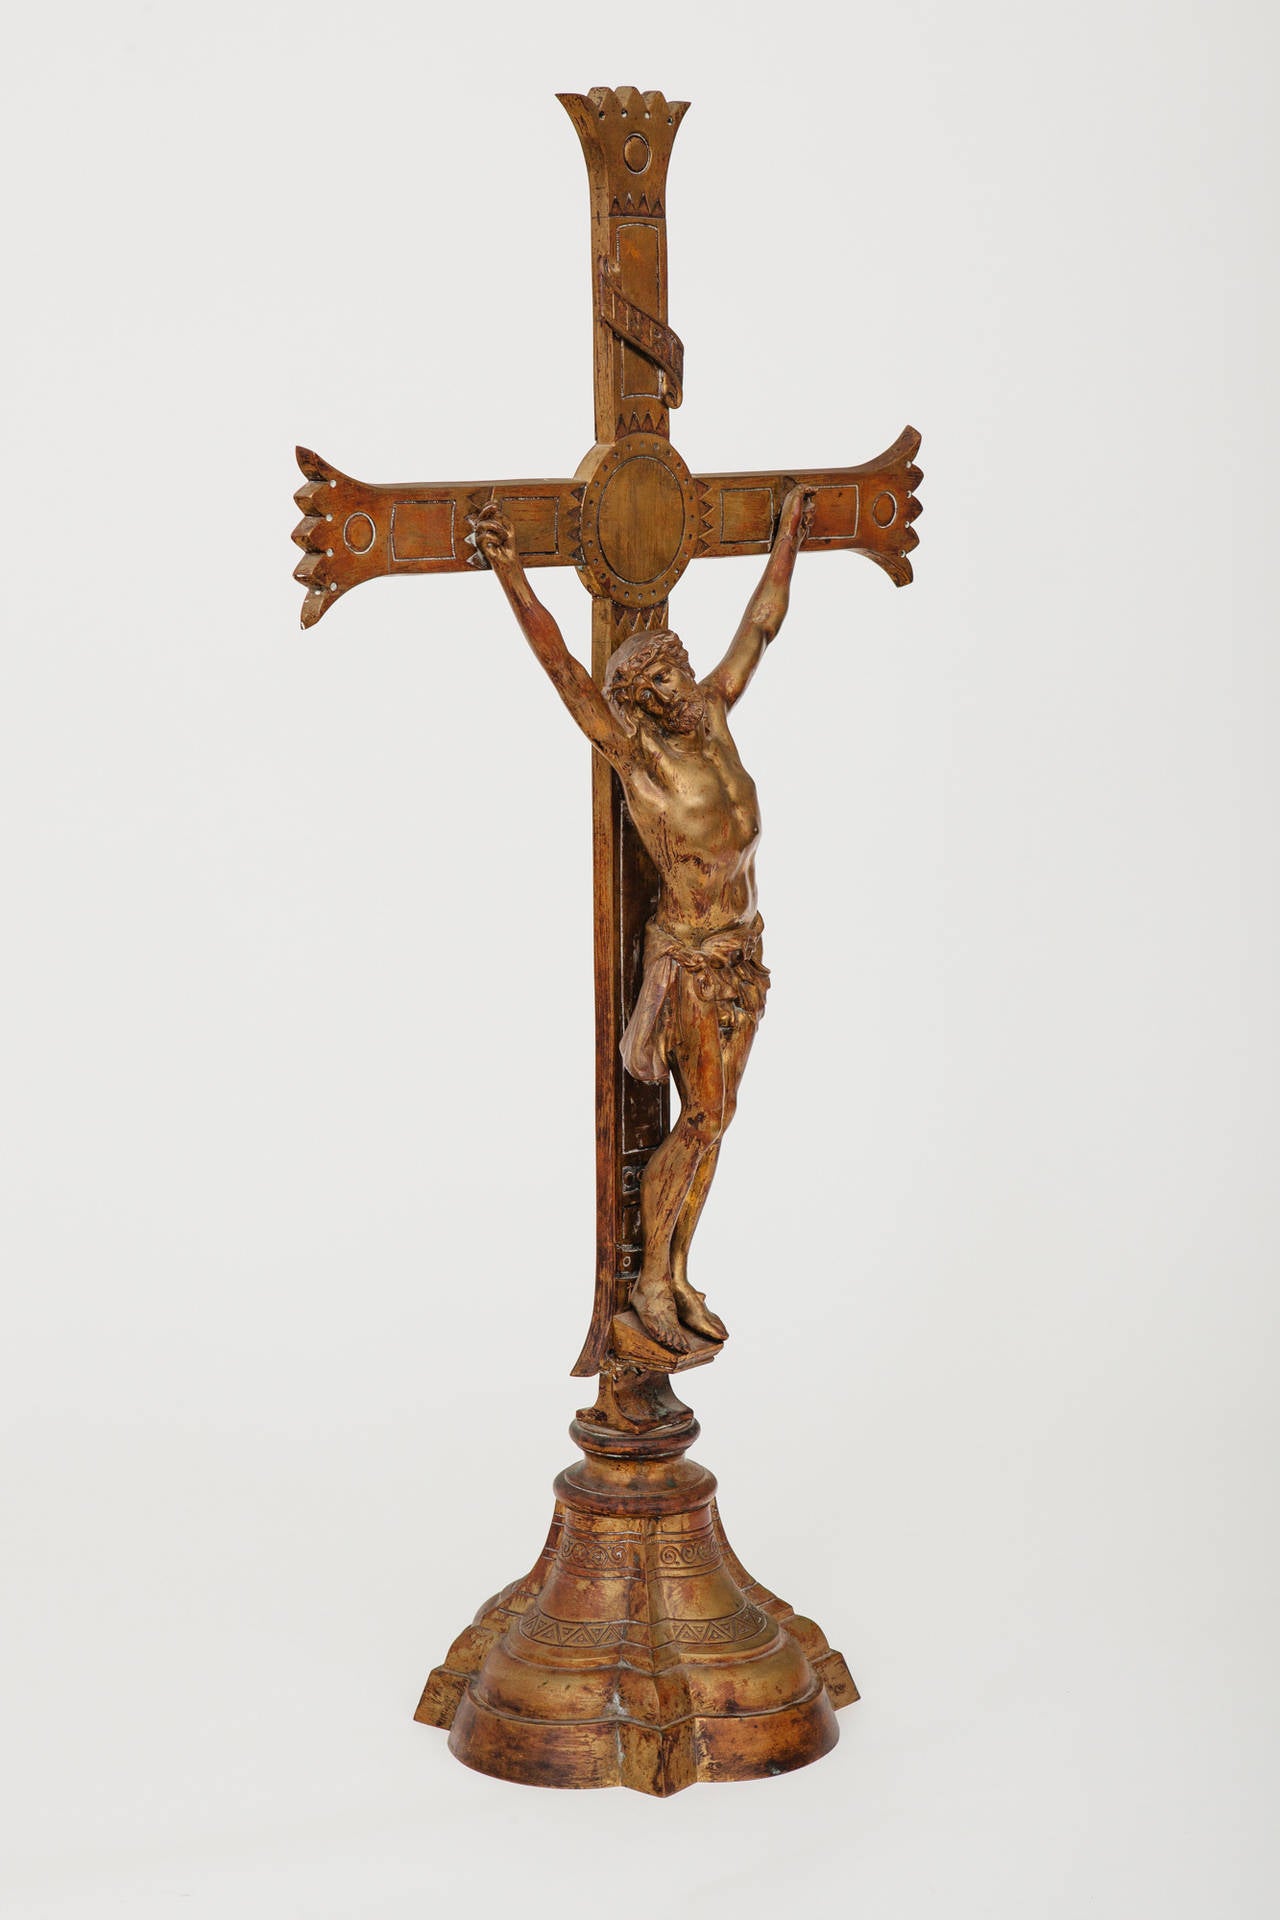 Énorme sculpture en bronze coulé représentant une croix avec le Christ.
Le travail d'après-coup et le modelage sont de grande qualité pour une figure de cette taille, comme en témoignent la ciselure des cheveux et le martelage de la croix.
Quatre